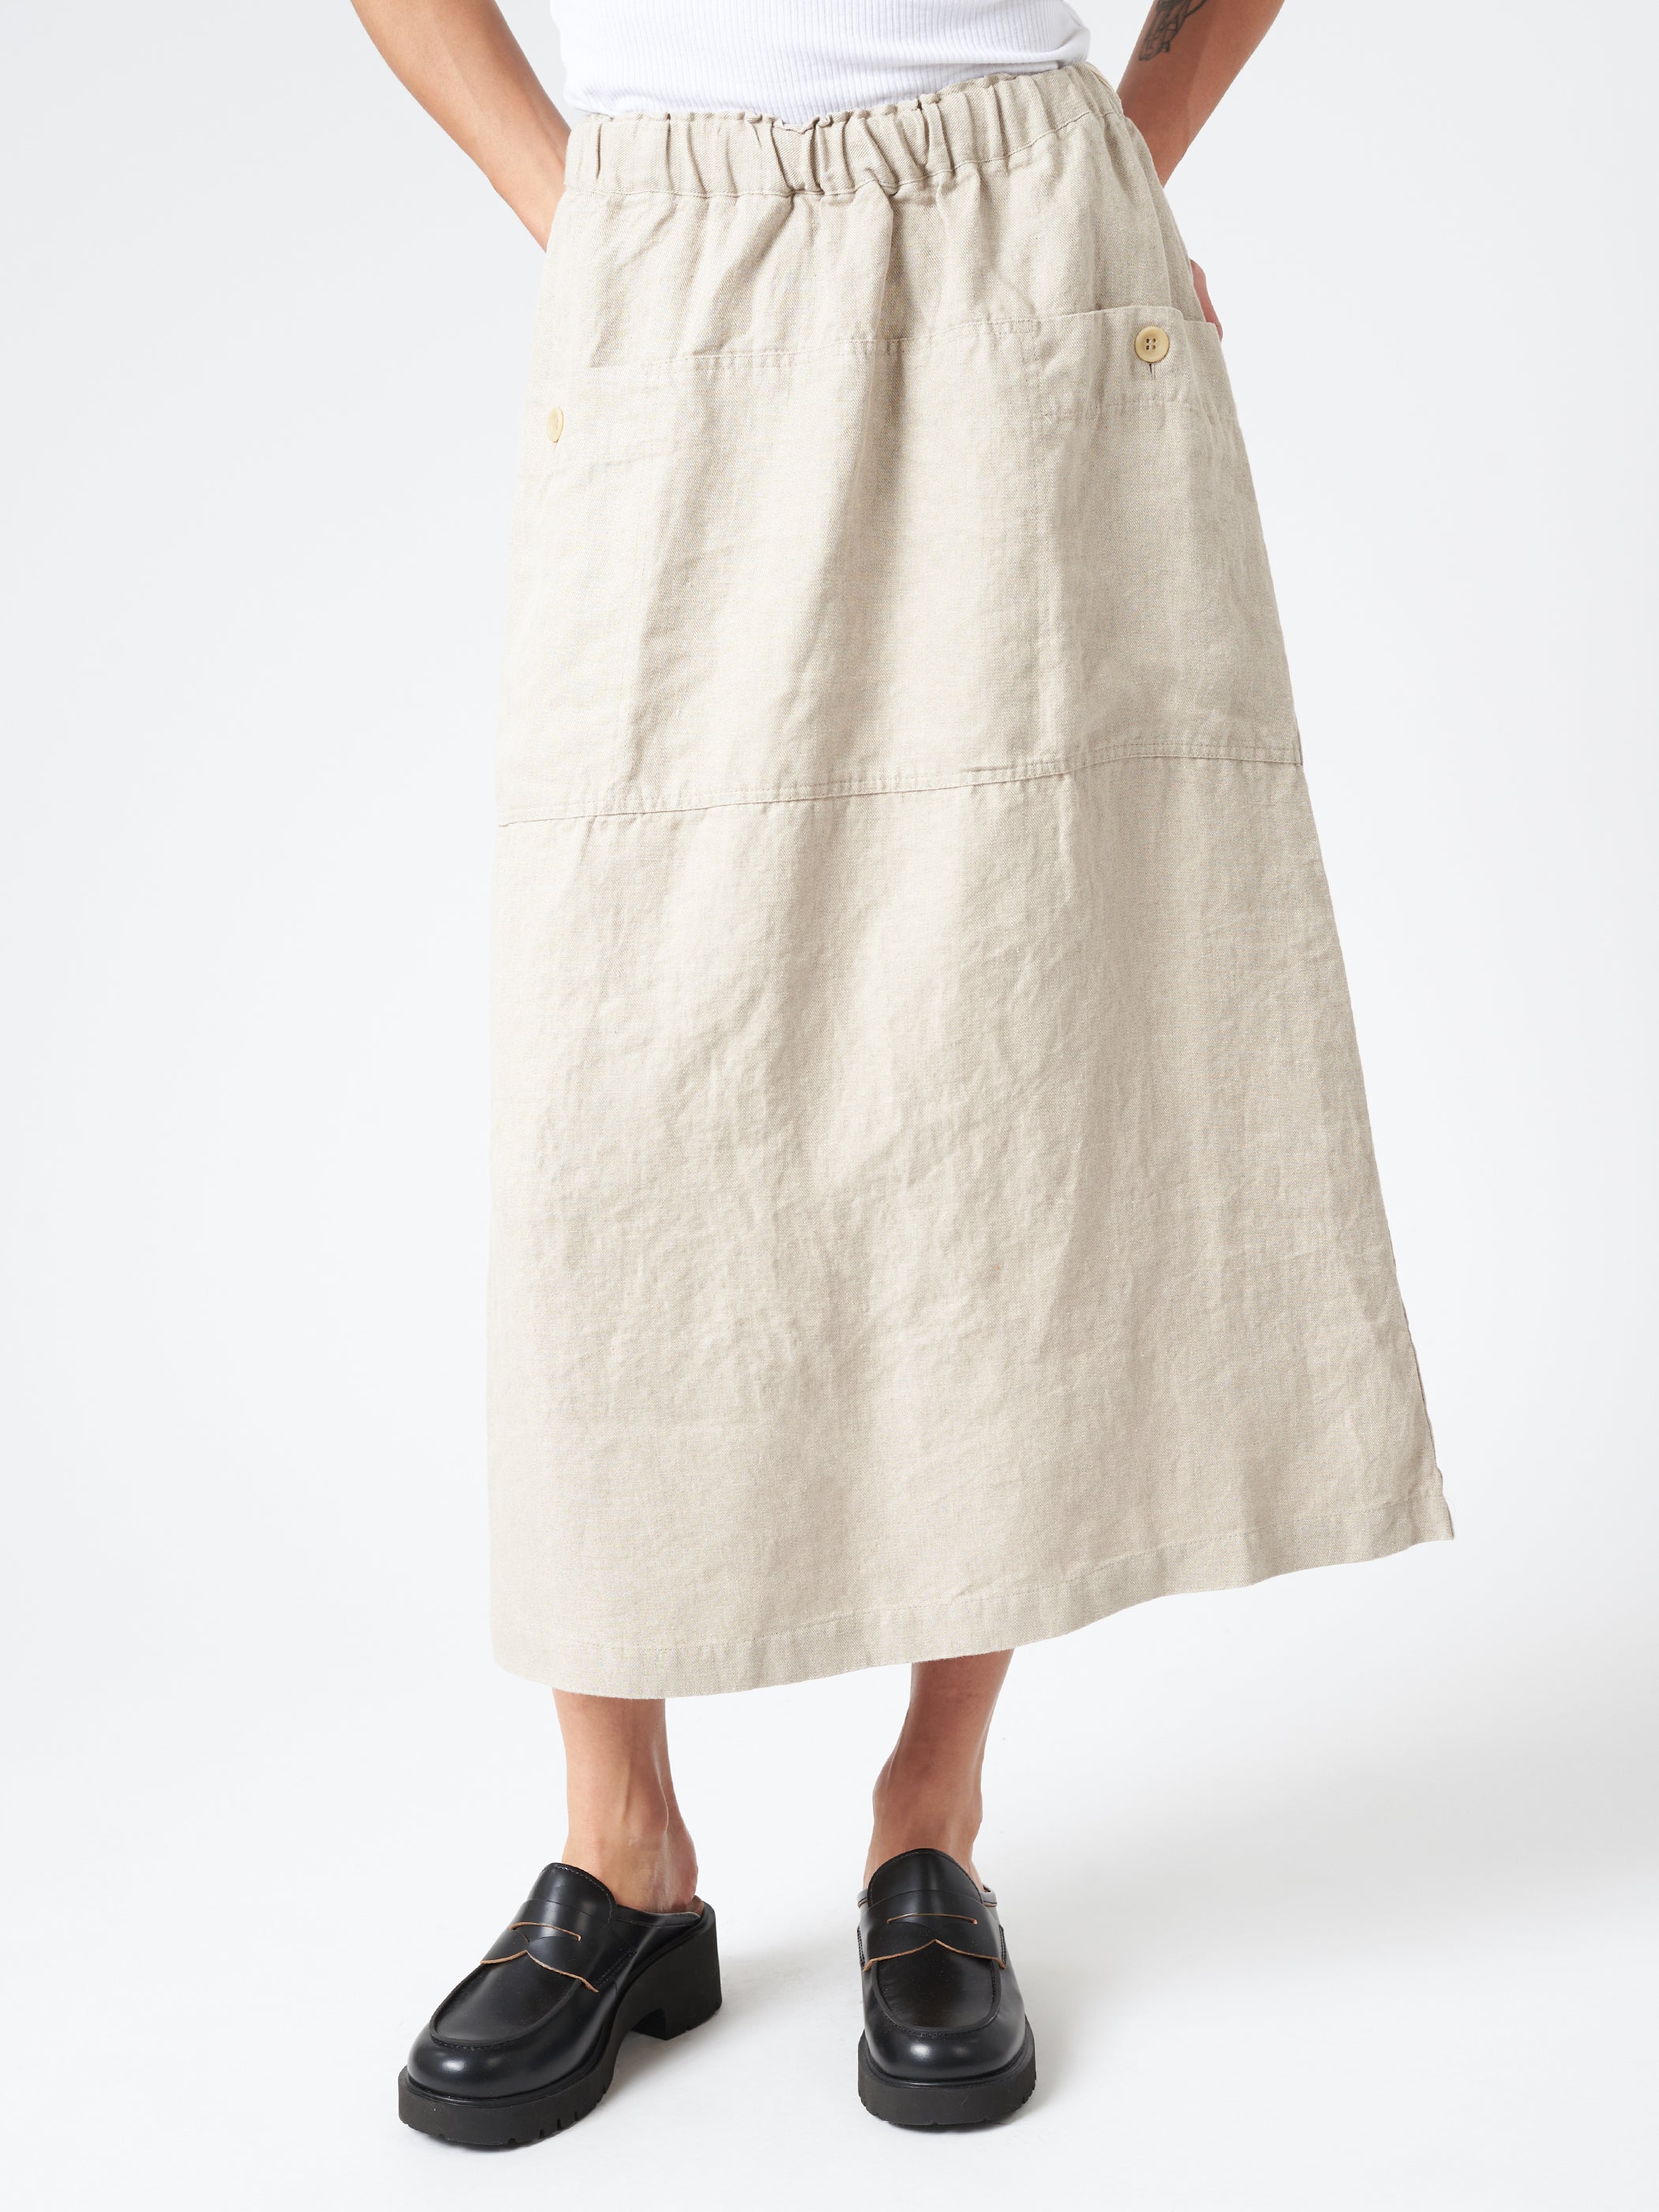 Gardener Skirt